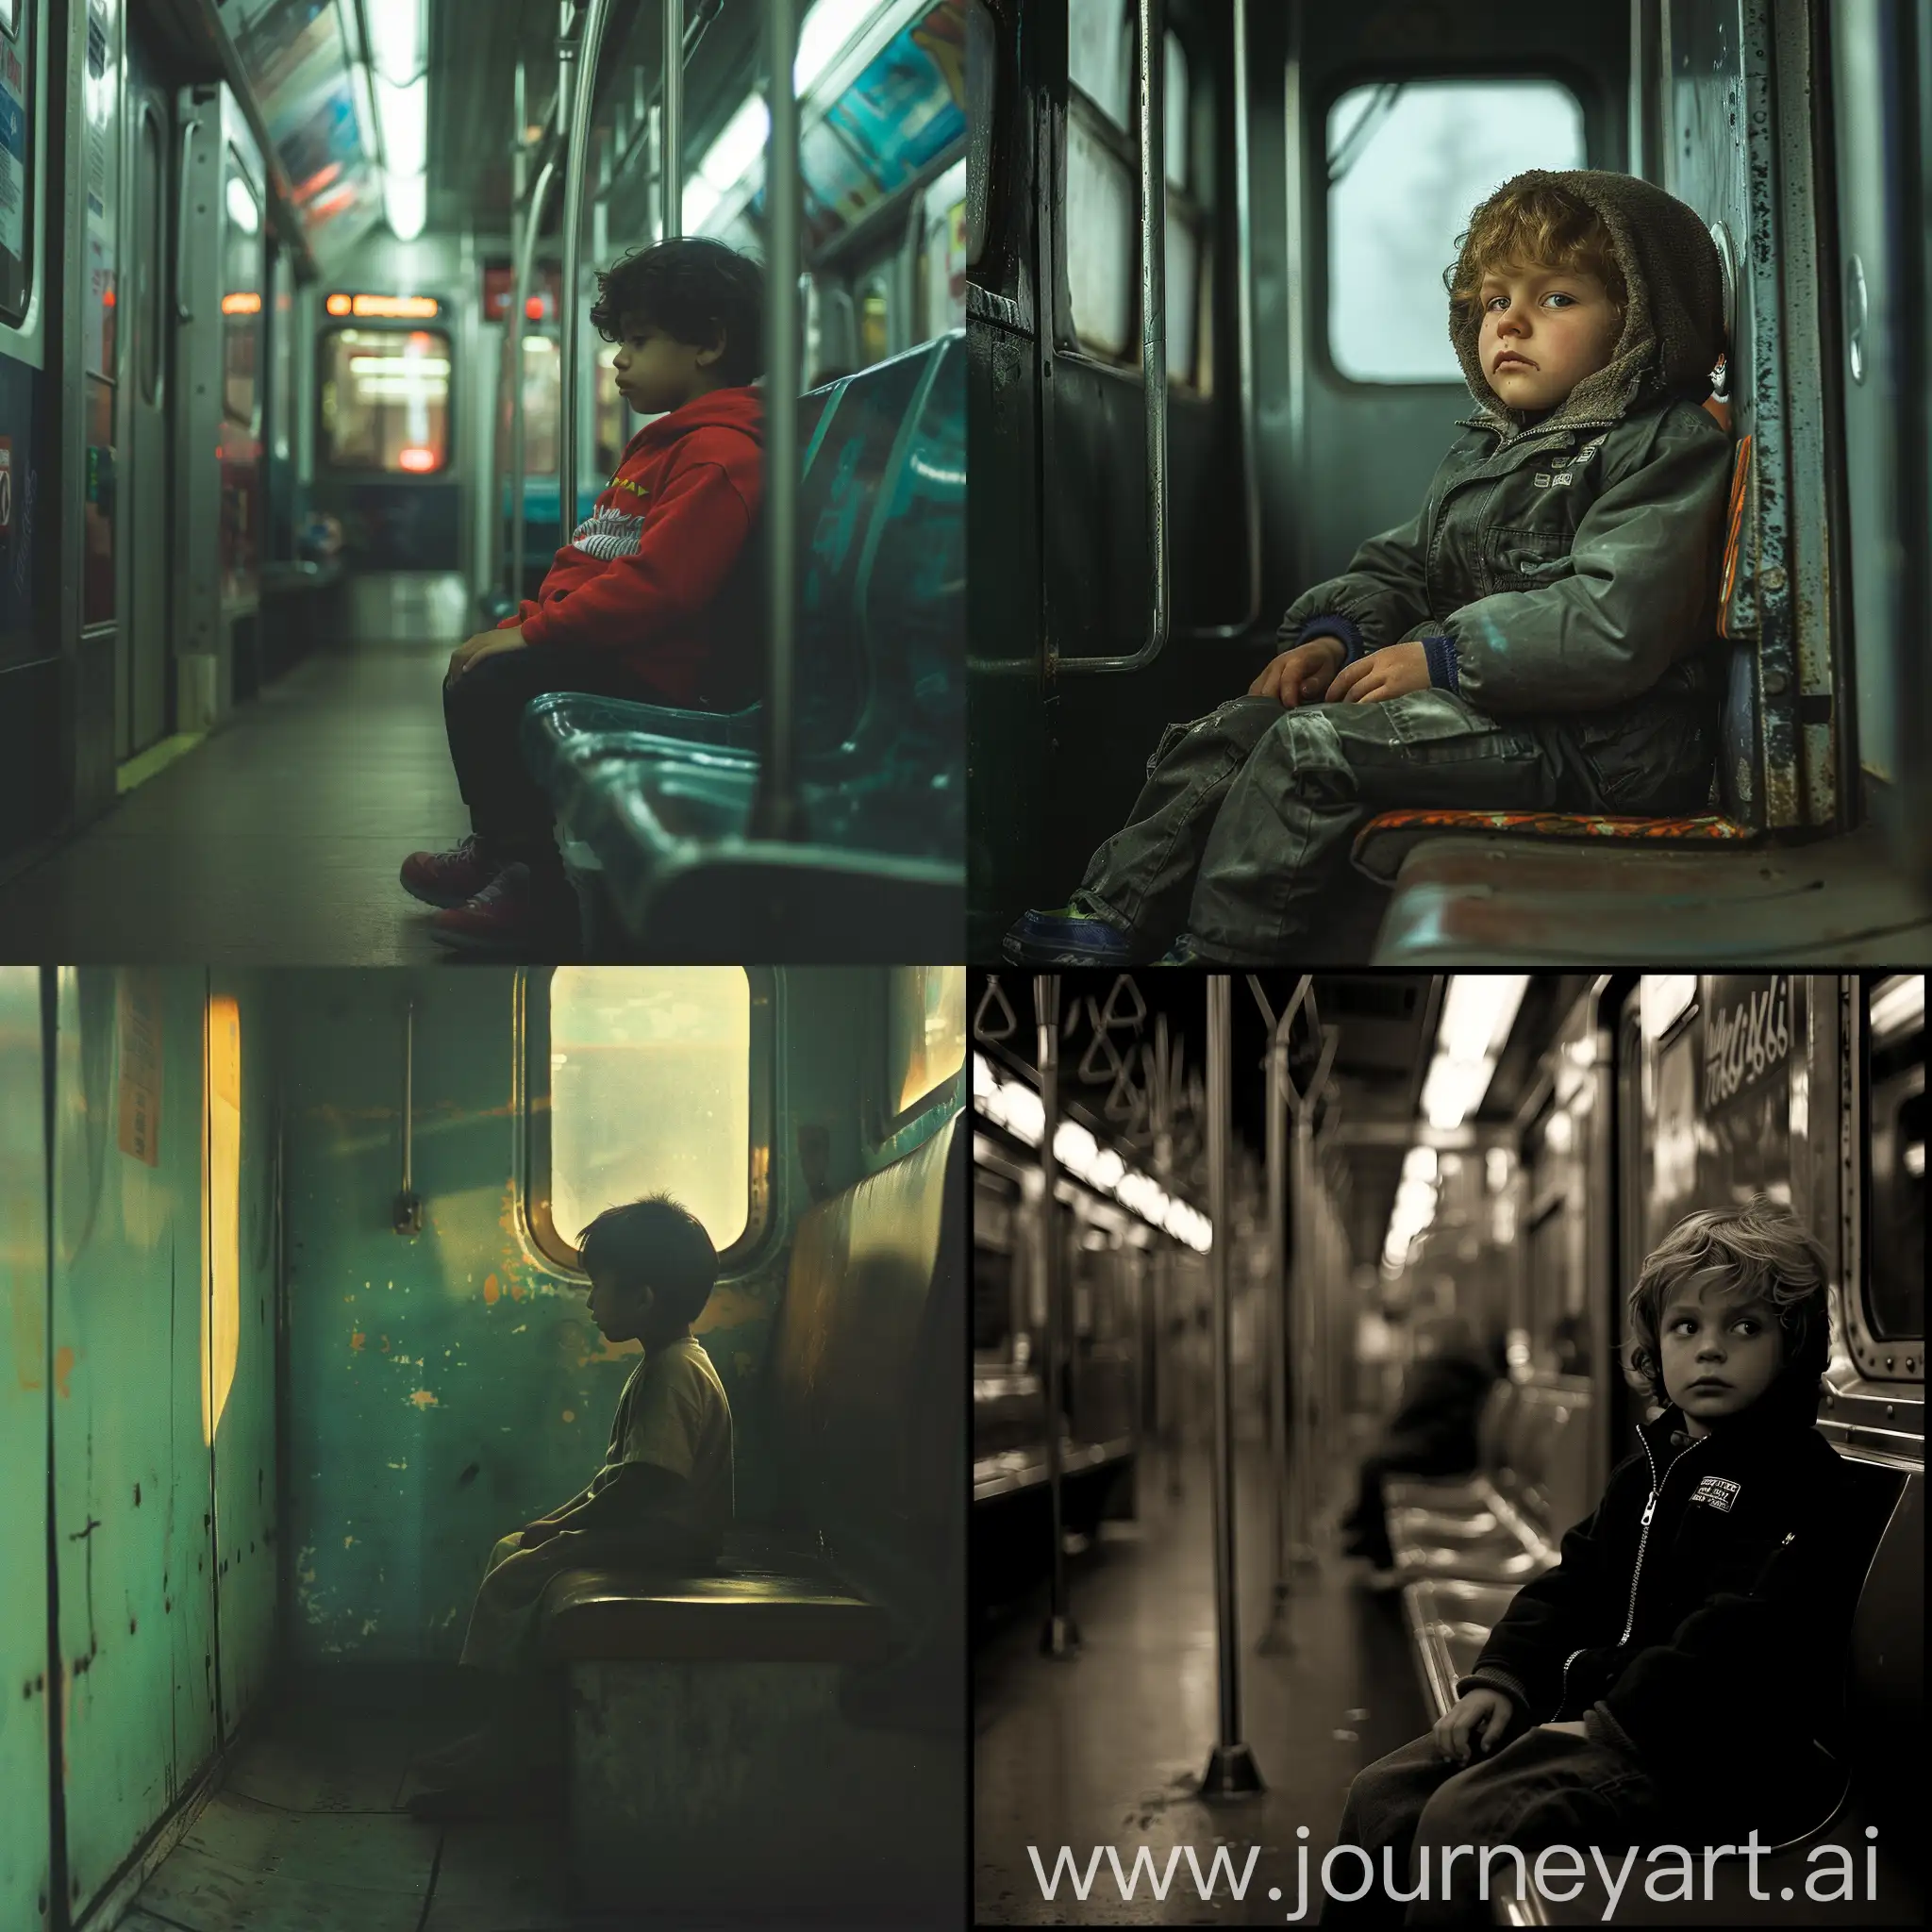 a kid sitting on a train